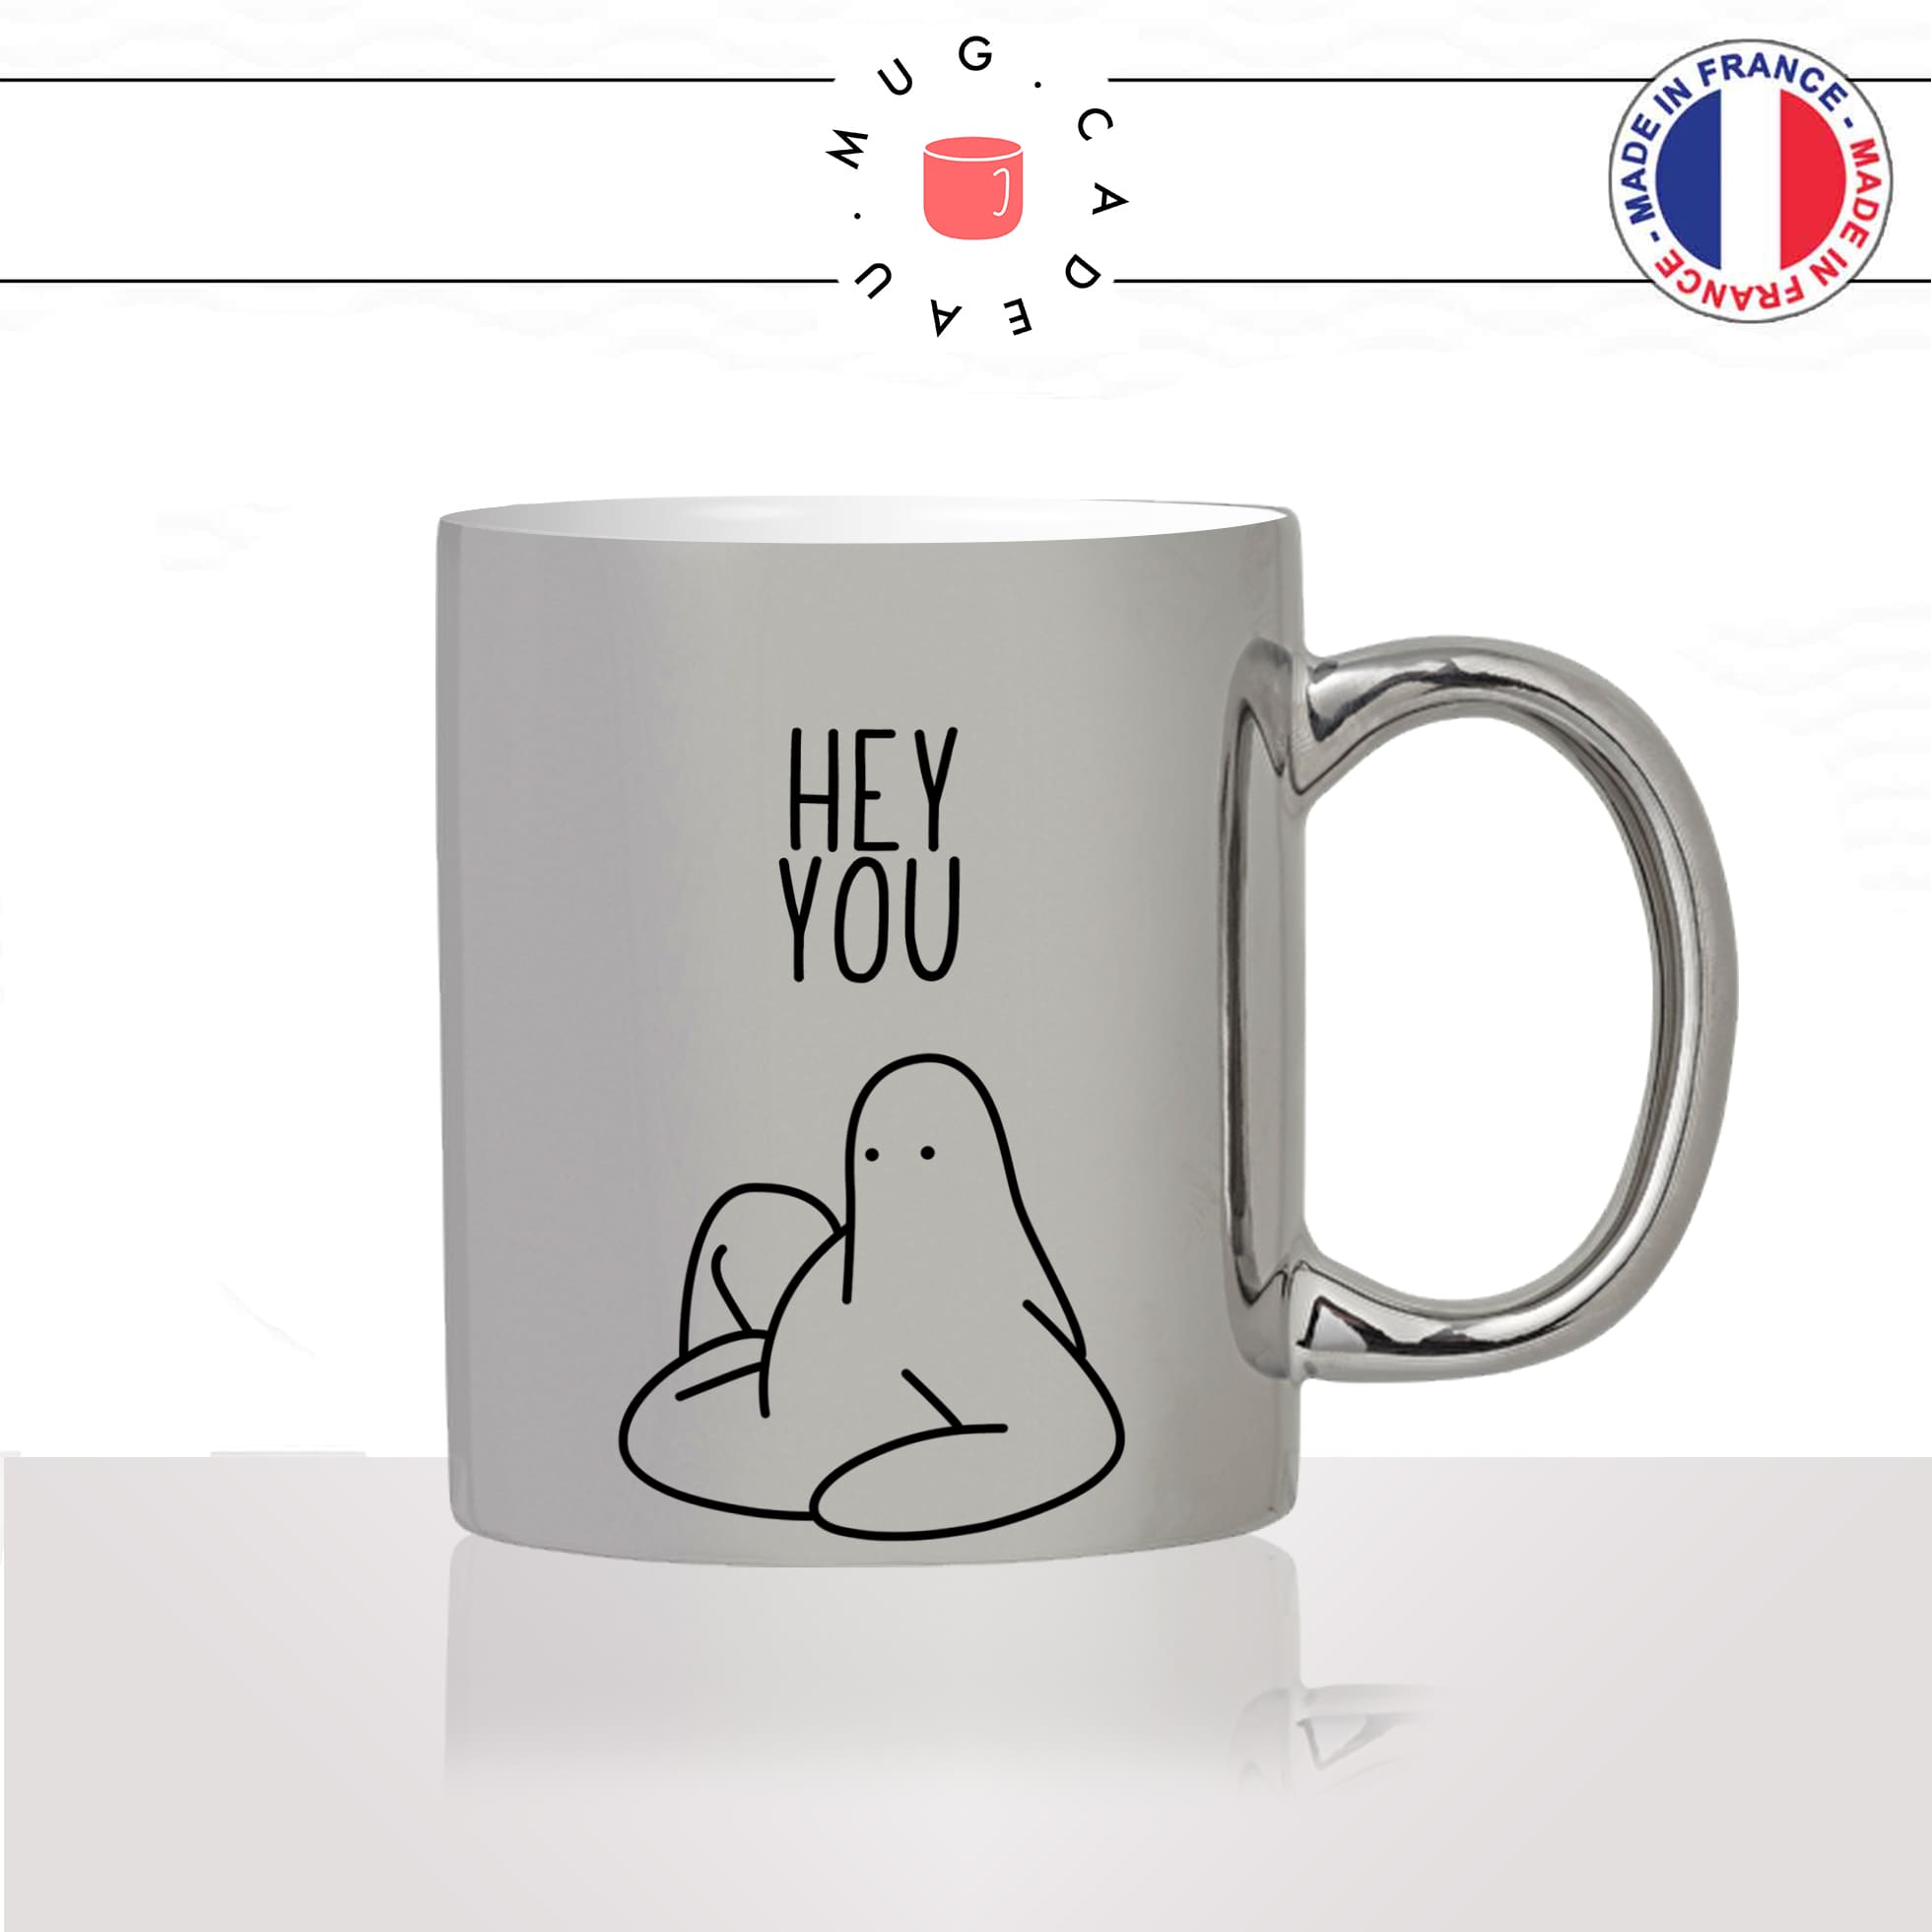 mug-tasse-argent-argenté-silver-hey-you-coucou-toi-salut-bonjour-anglais-régime-dessin-collegue-ami-humour-idée-cadeau-fun-cool-café-thé2